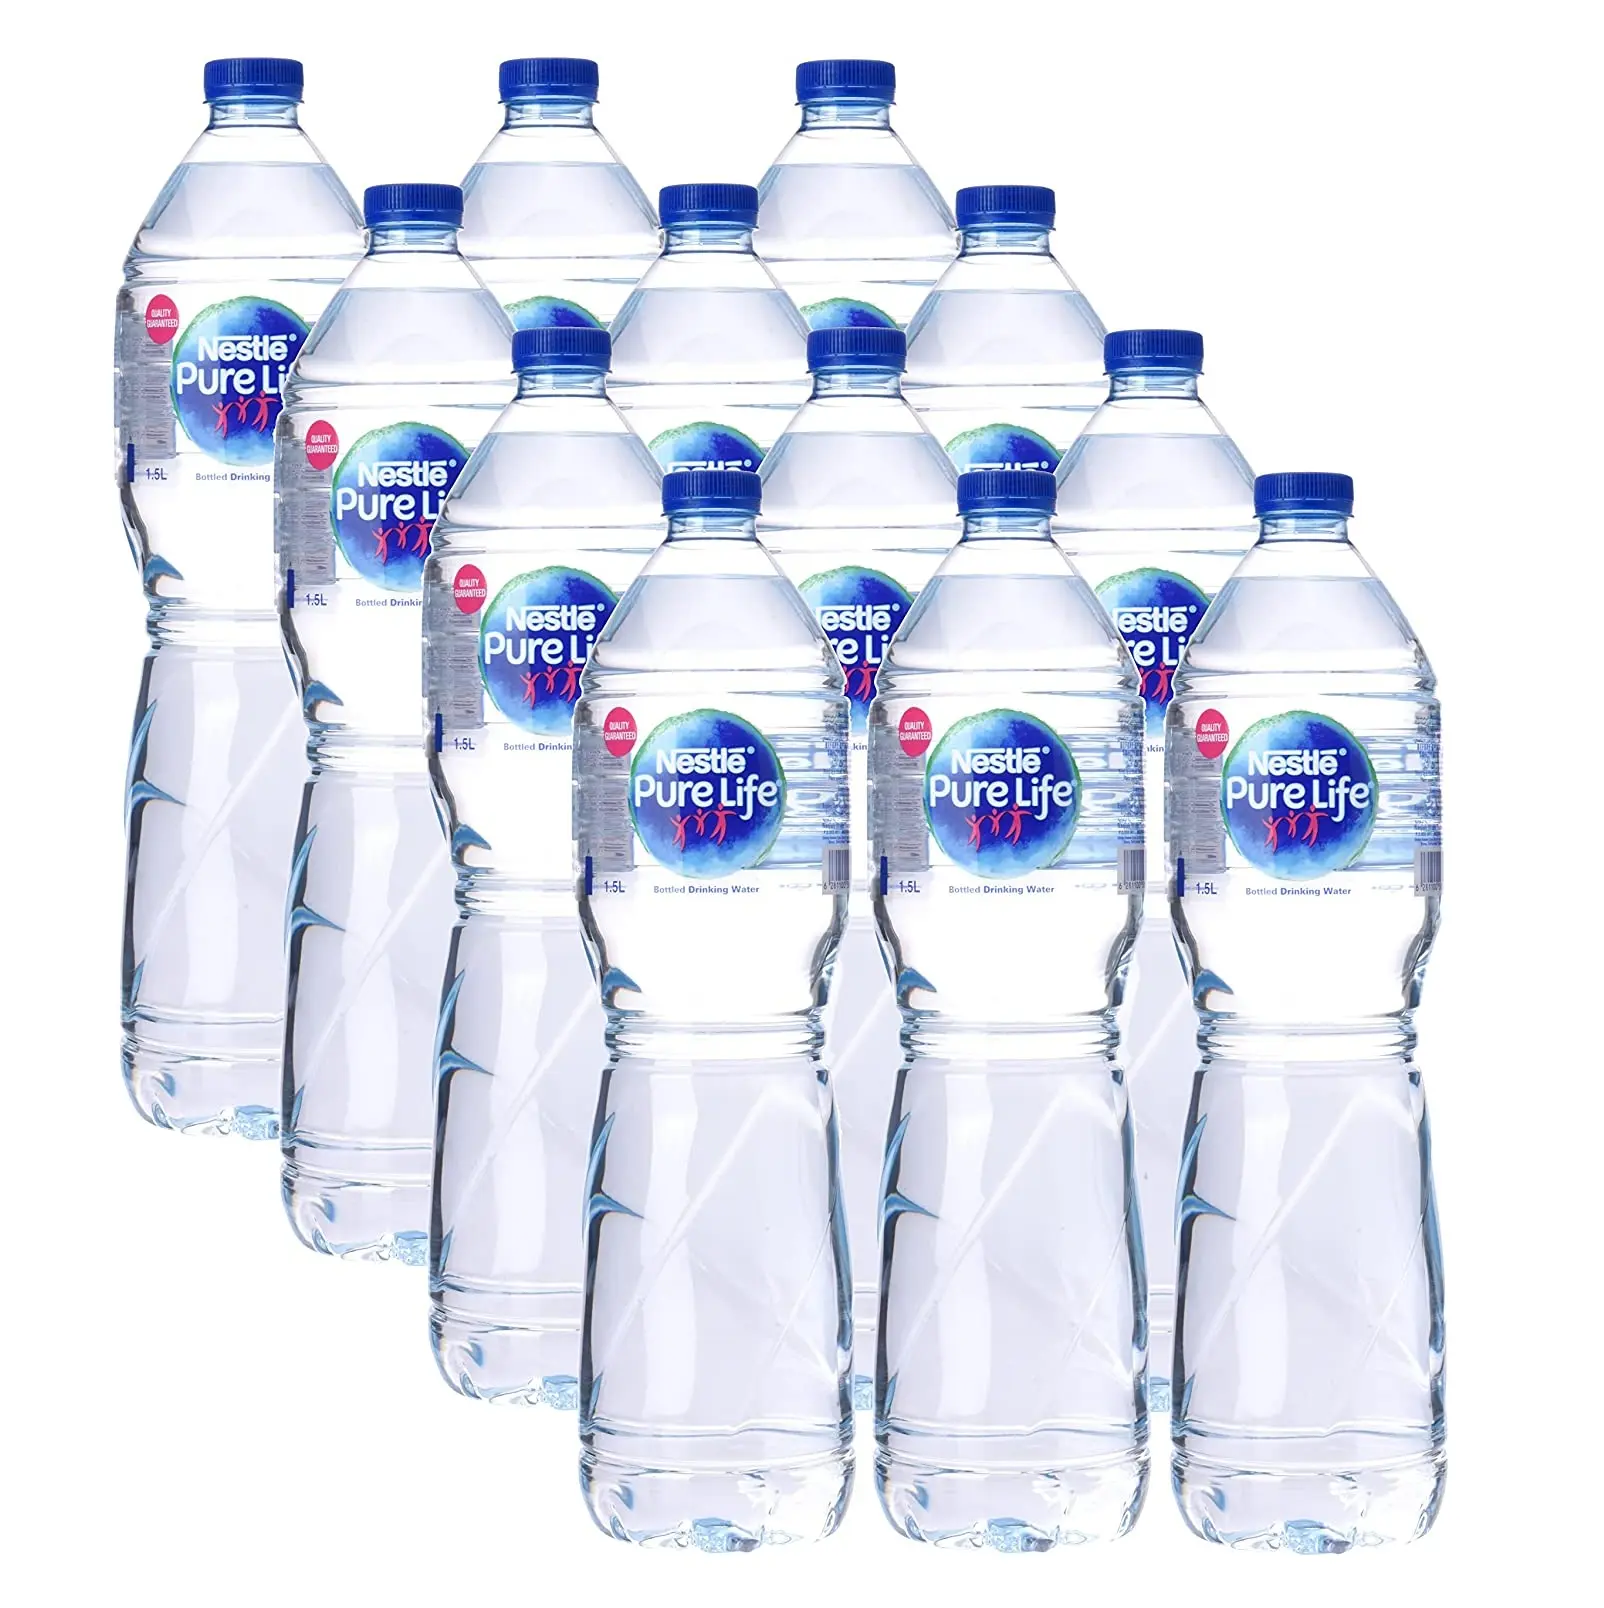 Nestle mevcut toplu stok-toptan fiyatlarla saf yaşam Premium kalite maden suyu